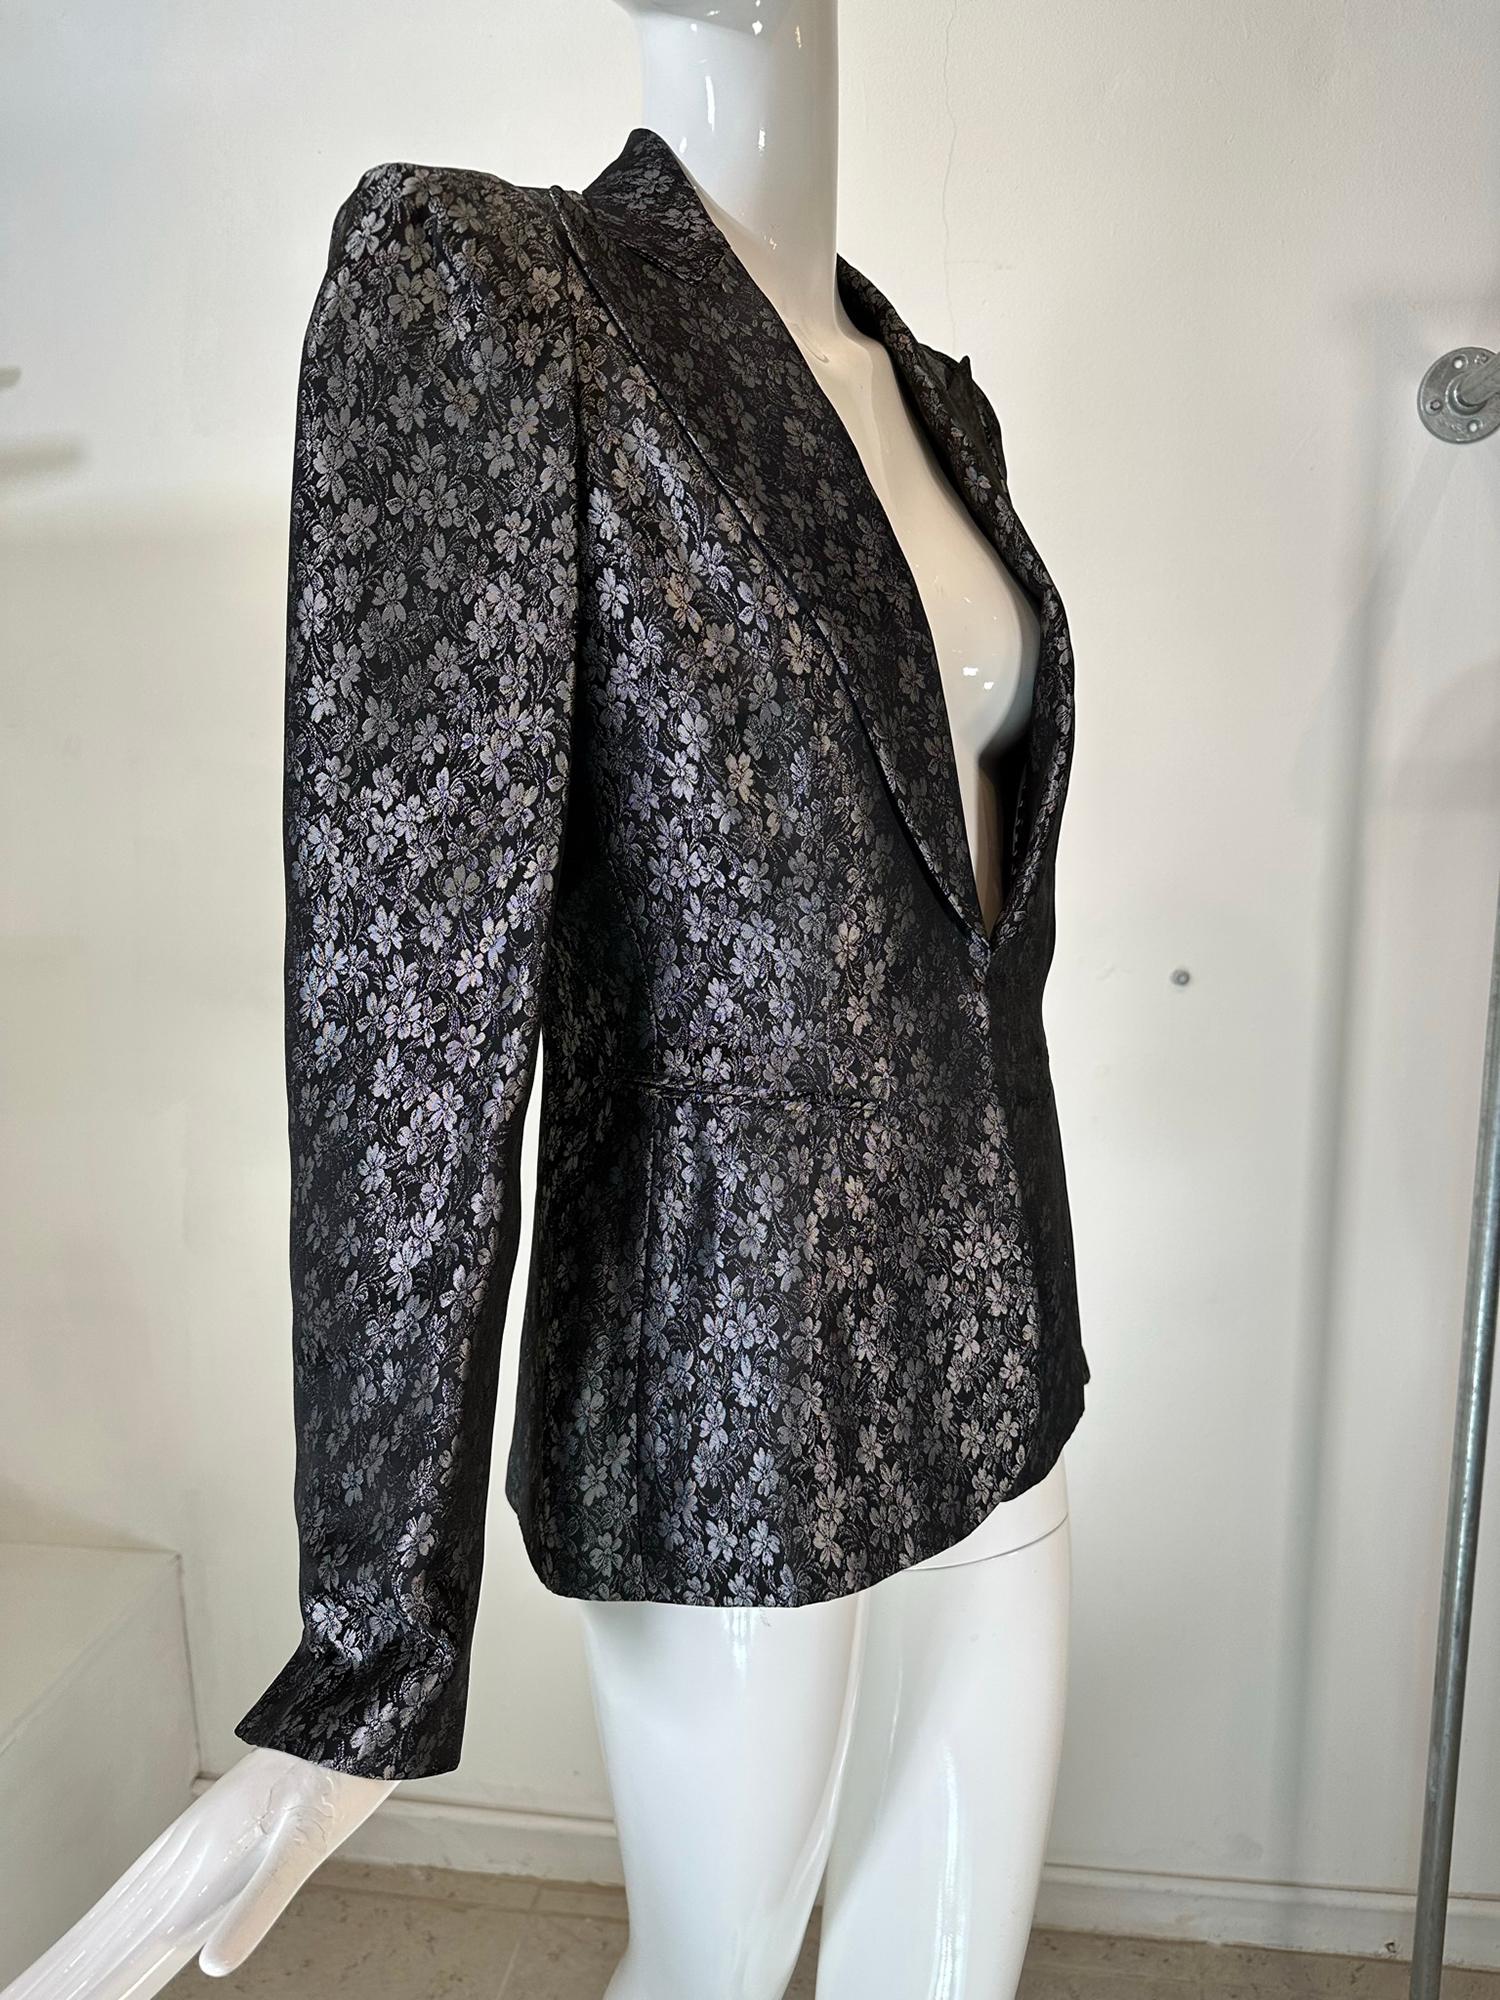  Richard Tyler schwarz-silberne Brokatjacke aus den 1990er-Jahren, einreihig. Eine elegante Jacke für den Tag oder den Abend, die zu Jeans genauso gut passt wie zu einem schlichten Cocktailkleid. Erstaunliche Schultern, perfekt geformt. Die Jacke